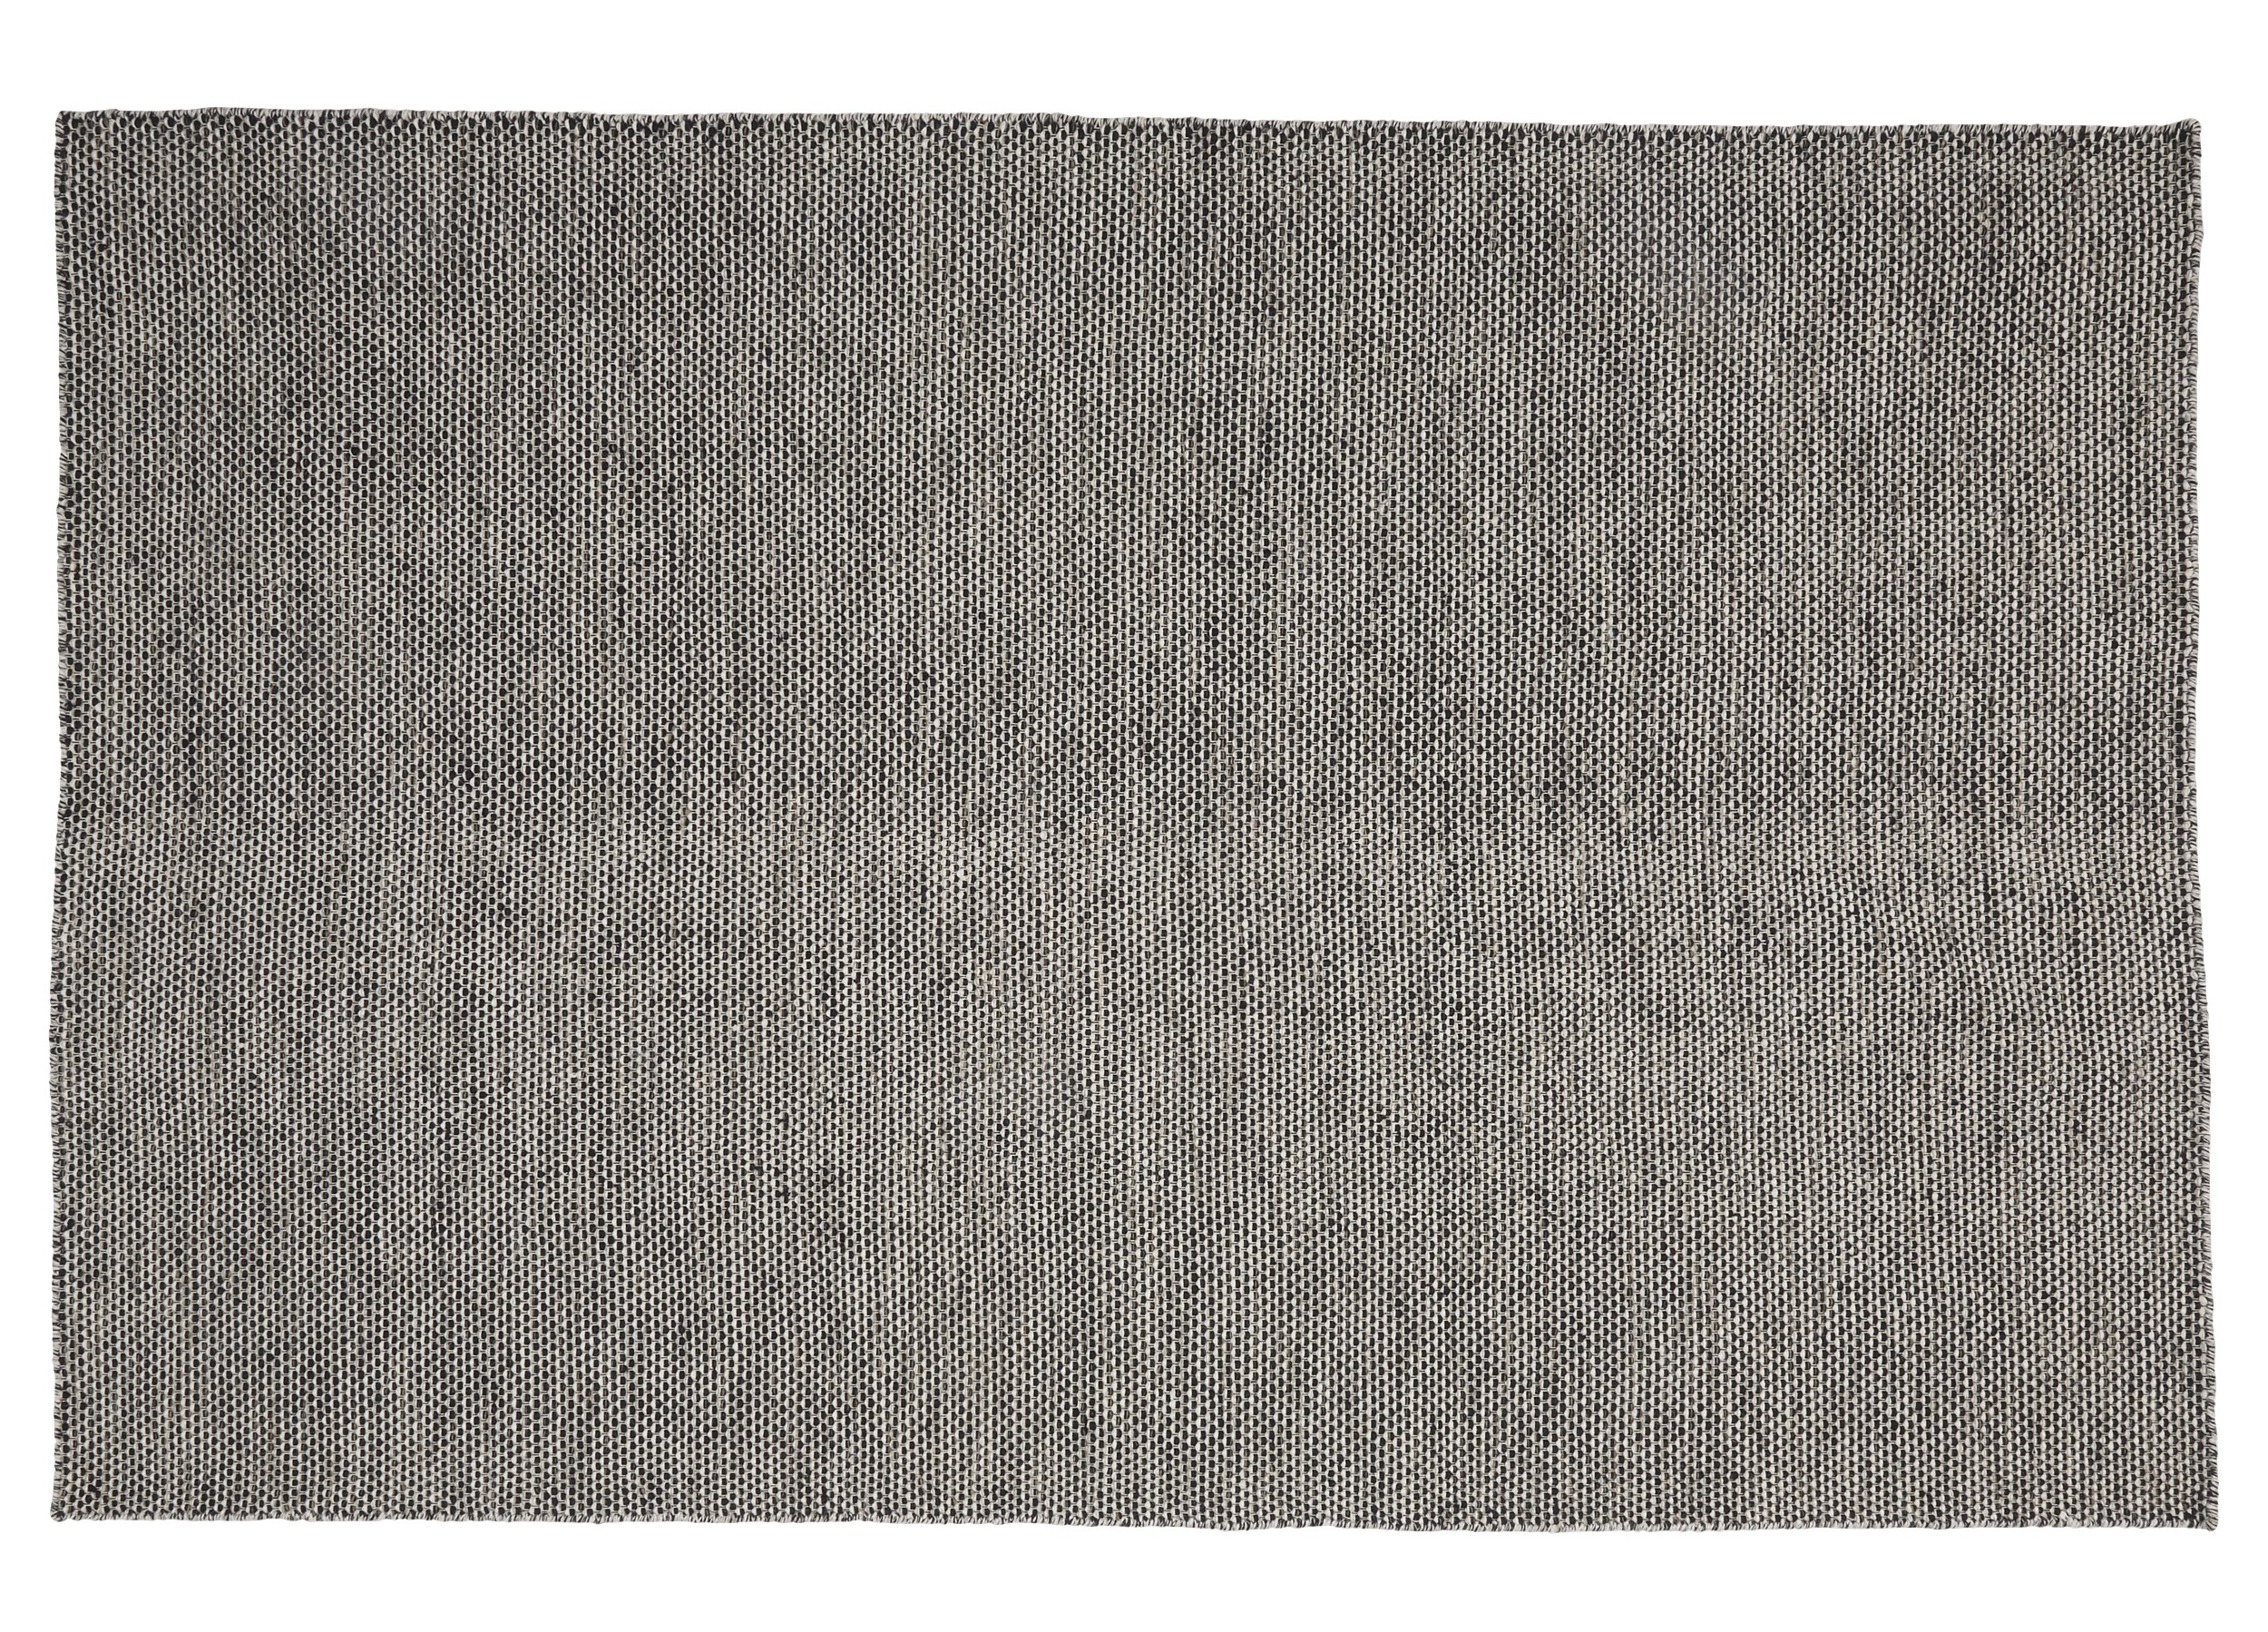 Gabi Kelimmatta 190 x 290 cm - Svart ull och offwhite/ljusgrått mönster